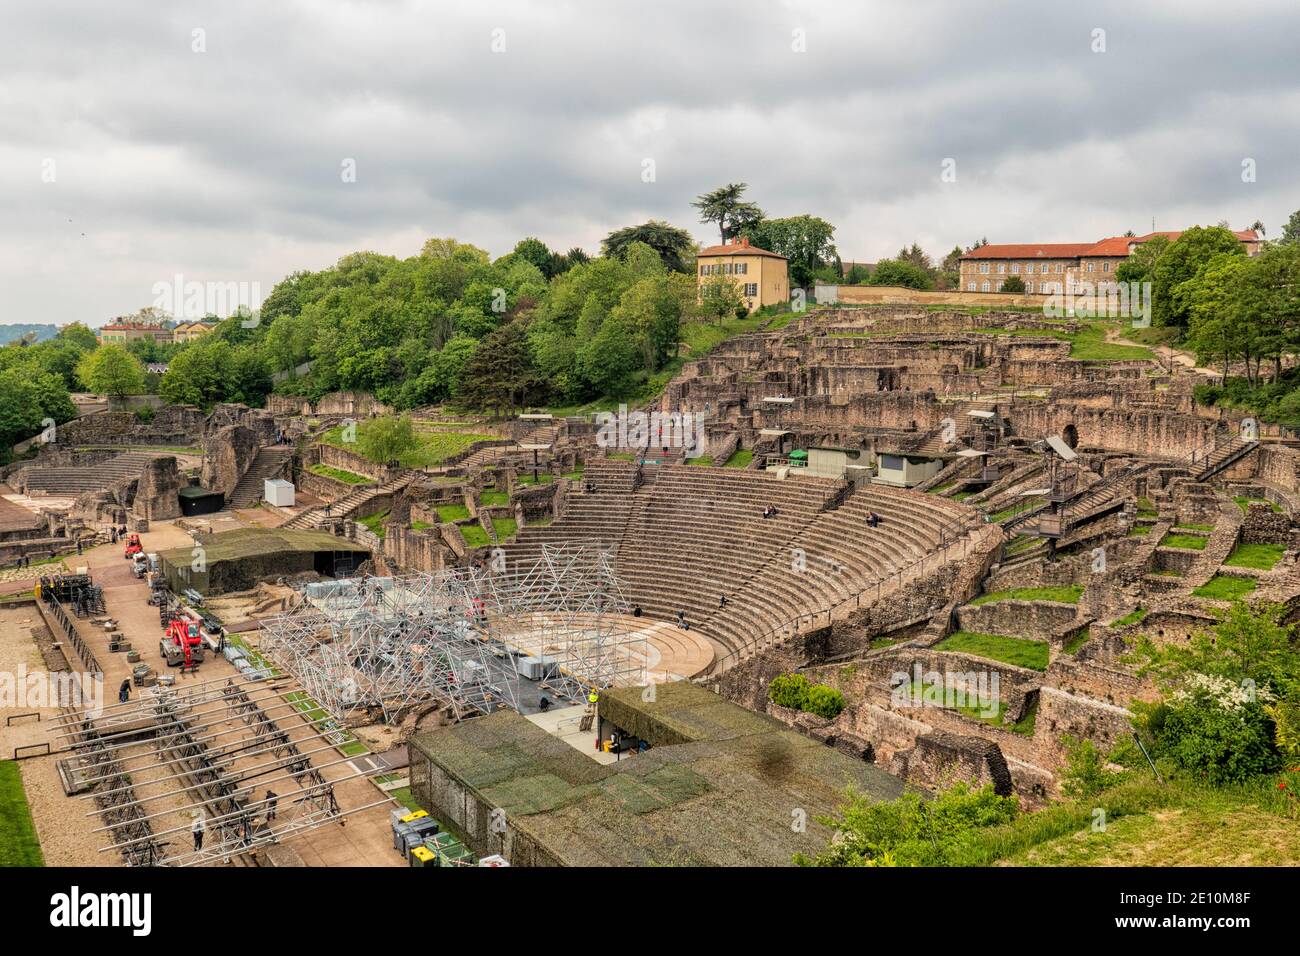 Le Grand Théâtre gallo romain et Odeon sur la colline de Fourvière à Lyon, France. Activité de construction pour une scène pour un grand spectacle. Banque D'Images